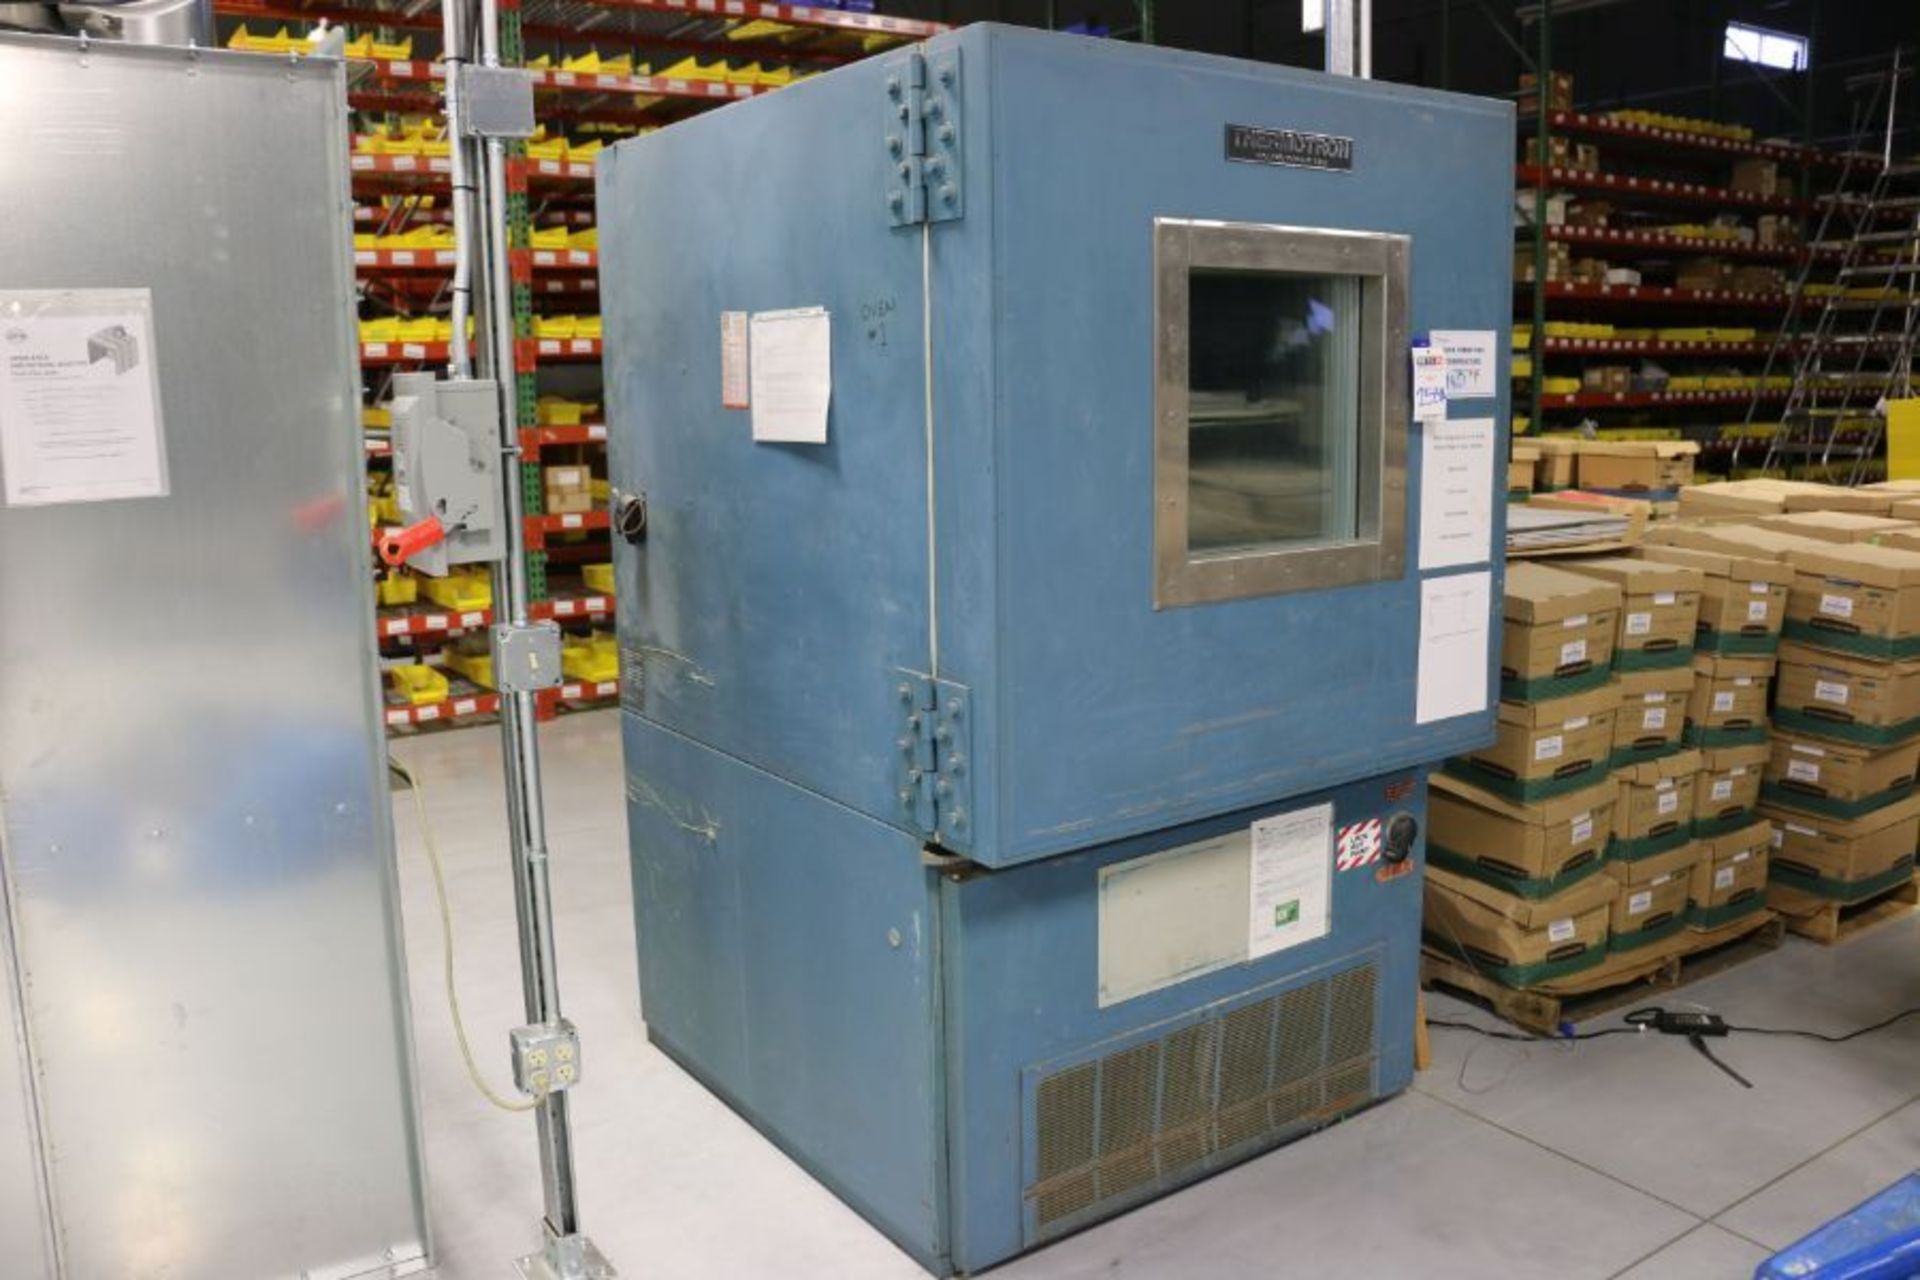 Thermotron S-32 Oven, 36" x 36" x 36" Work Envelope, 100 - 310 Degrees F Range, 240V, New 1987